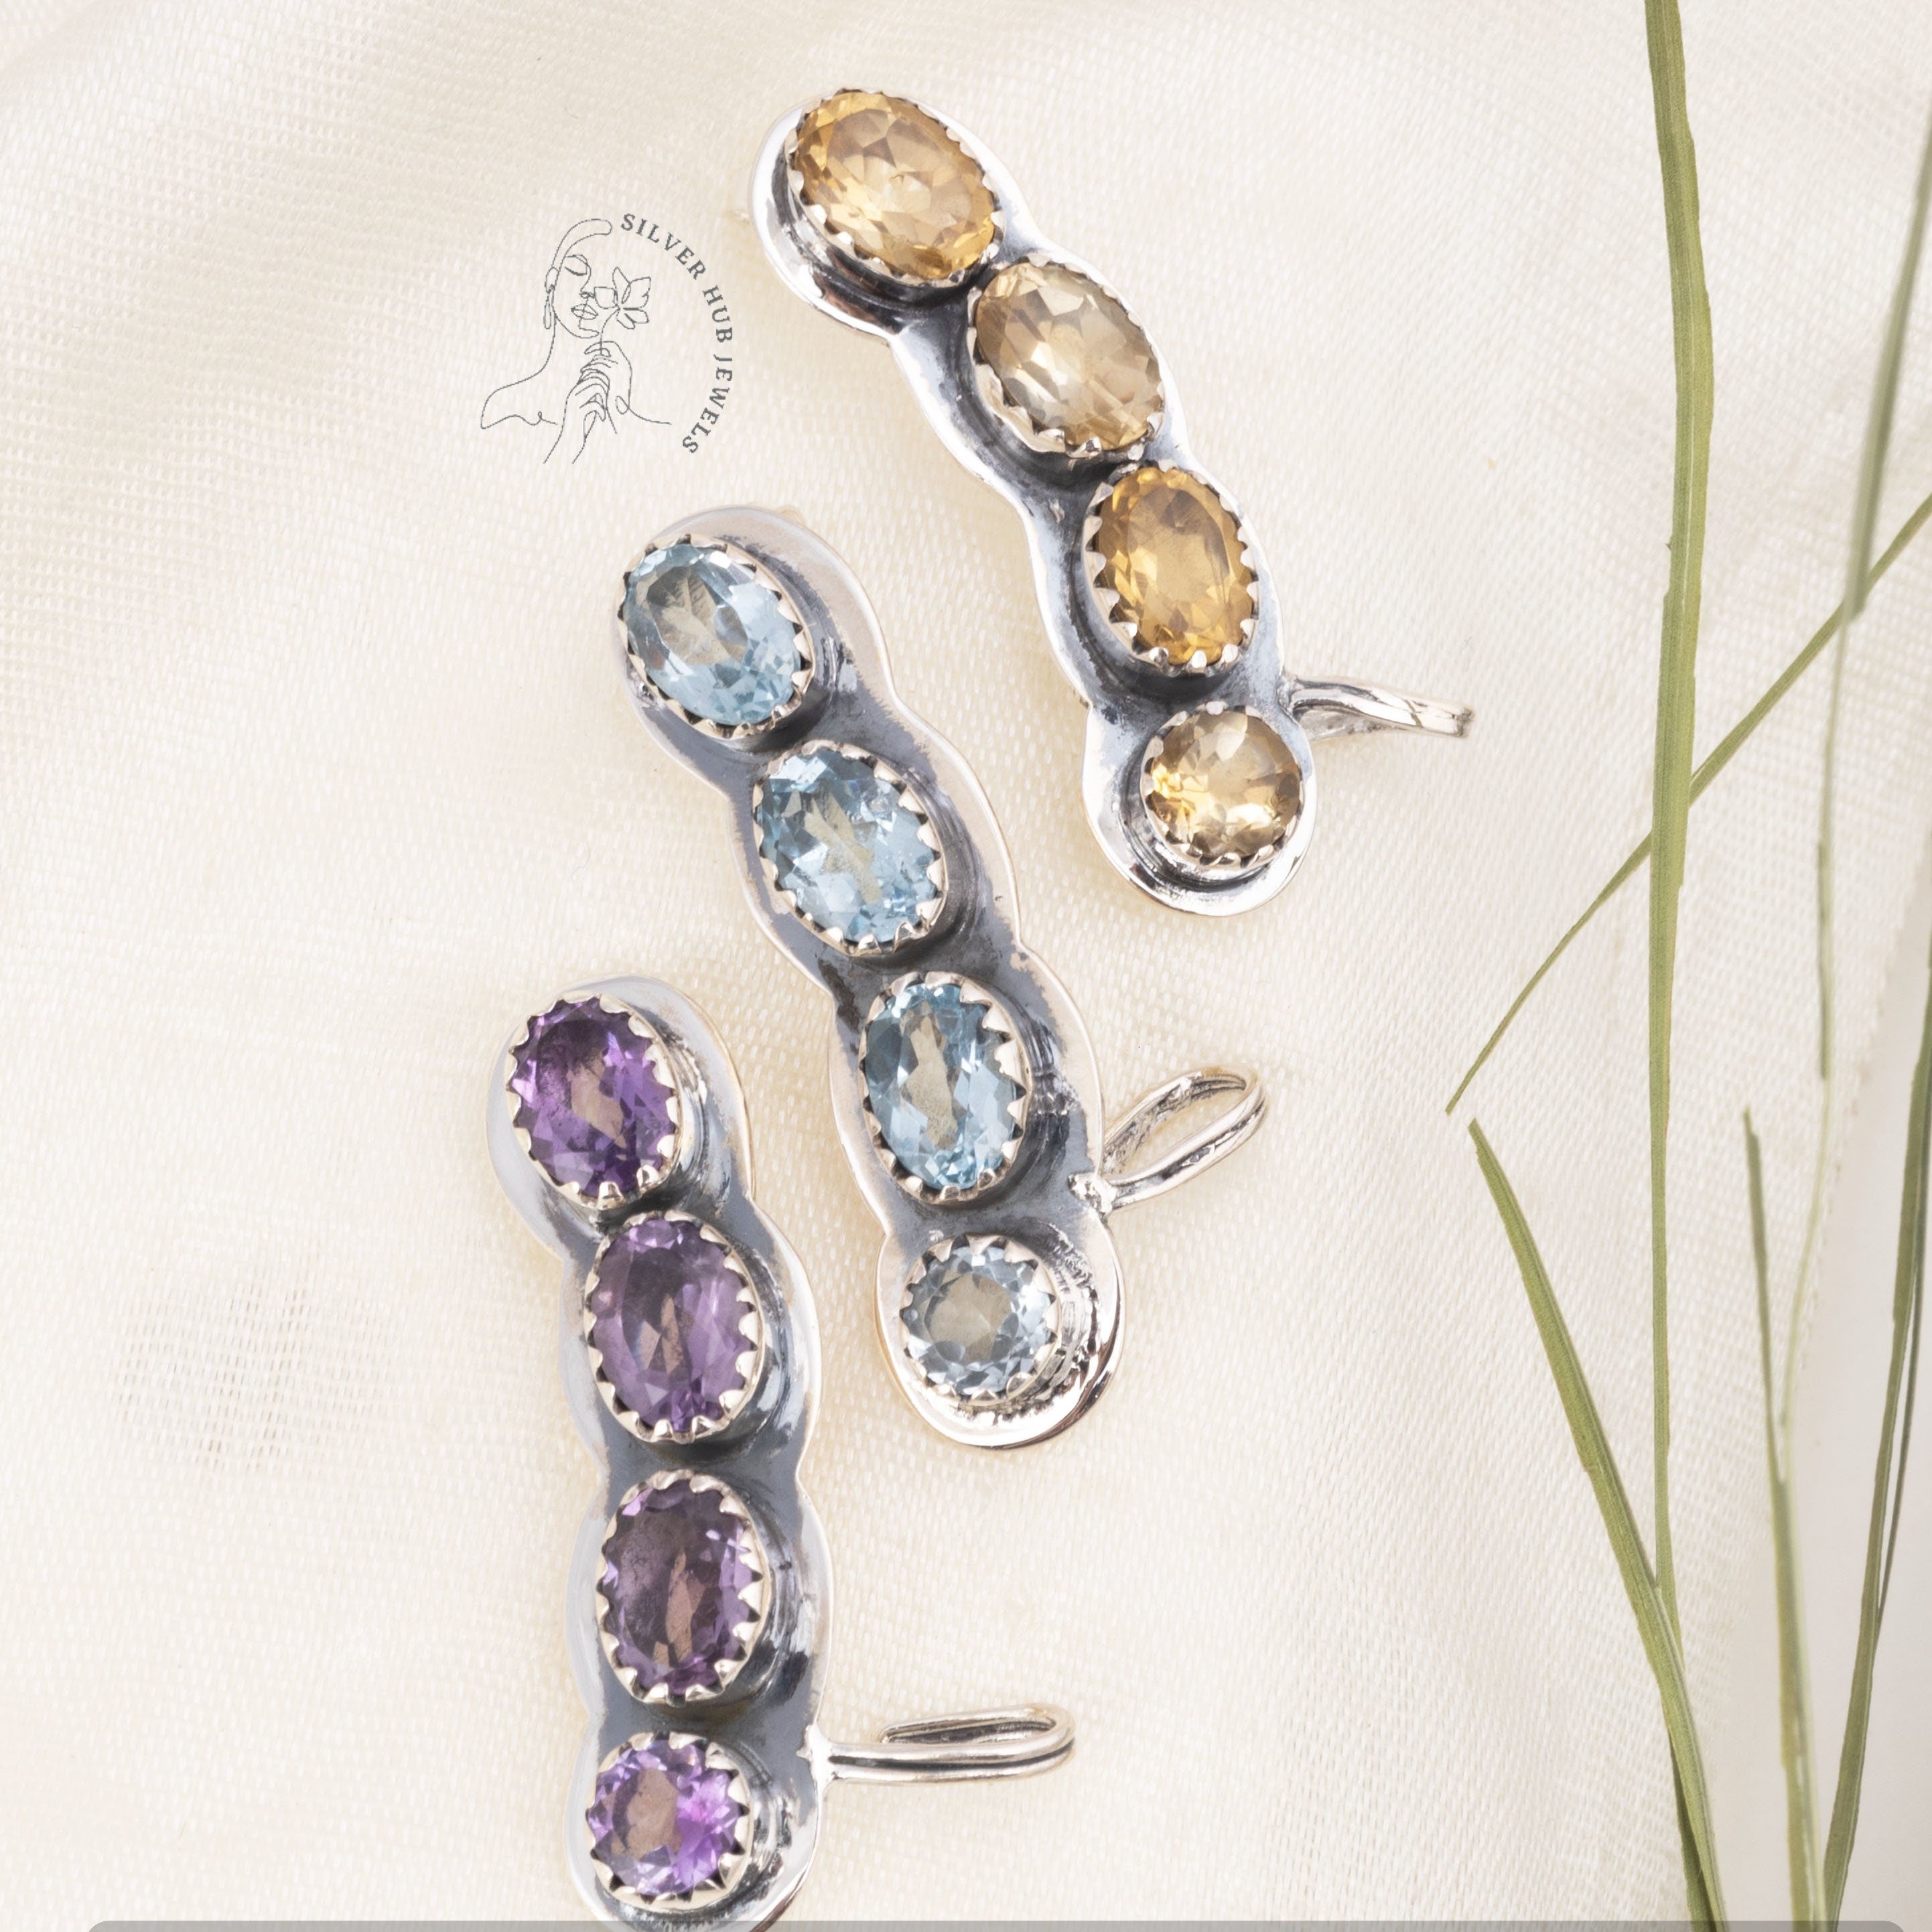 Rare Amethyst Ear Cuff Earrings, Gemstone Earrings, Purple Stud Earrings, 925 Sterling Silver Jewelry, Engagement Gift, Earrings For Mother